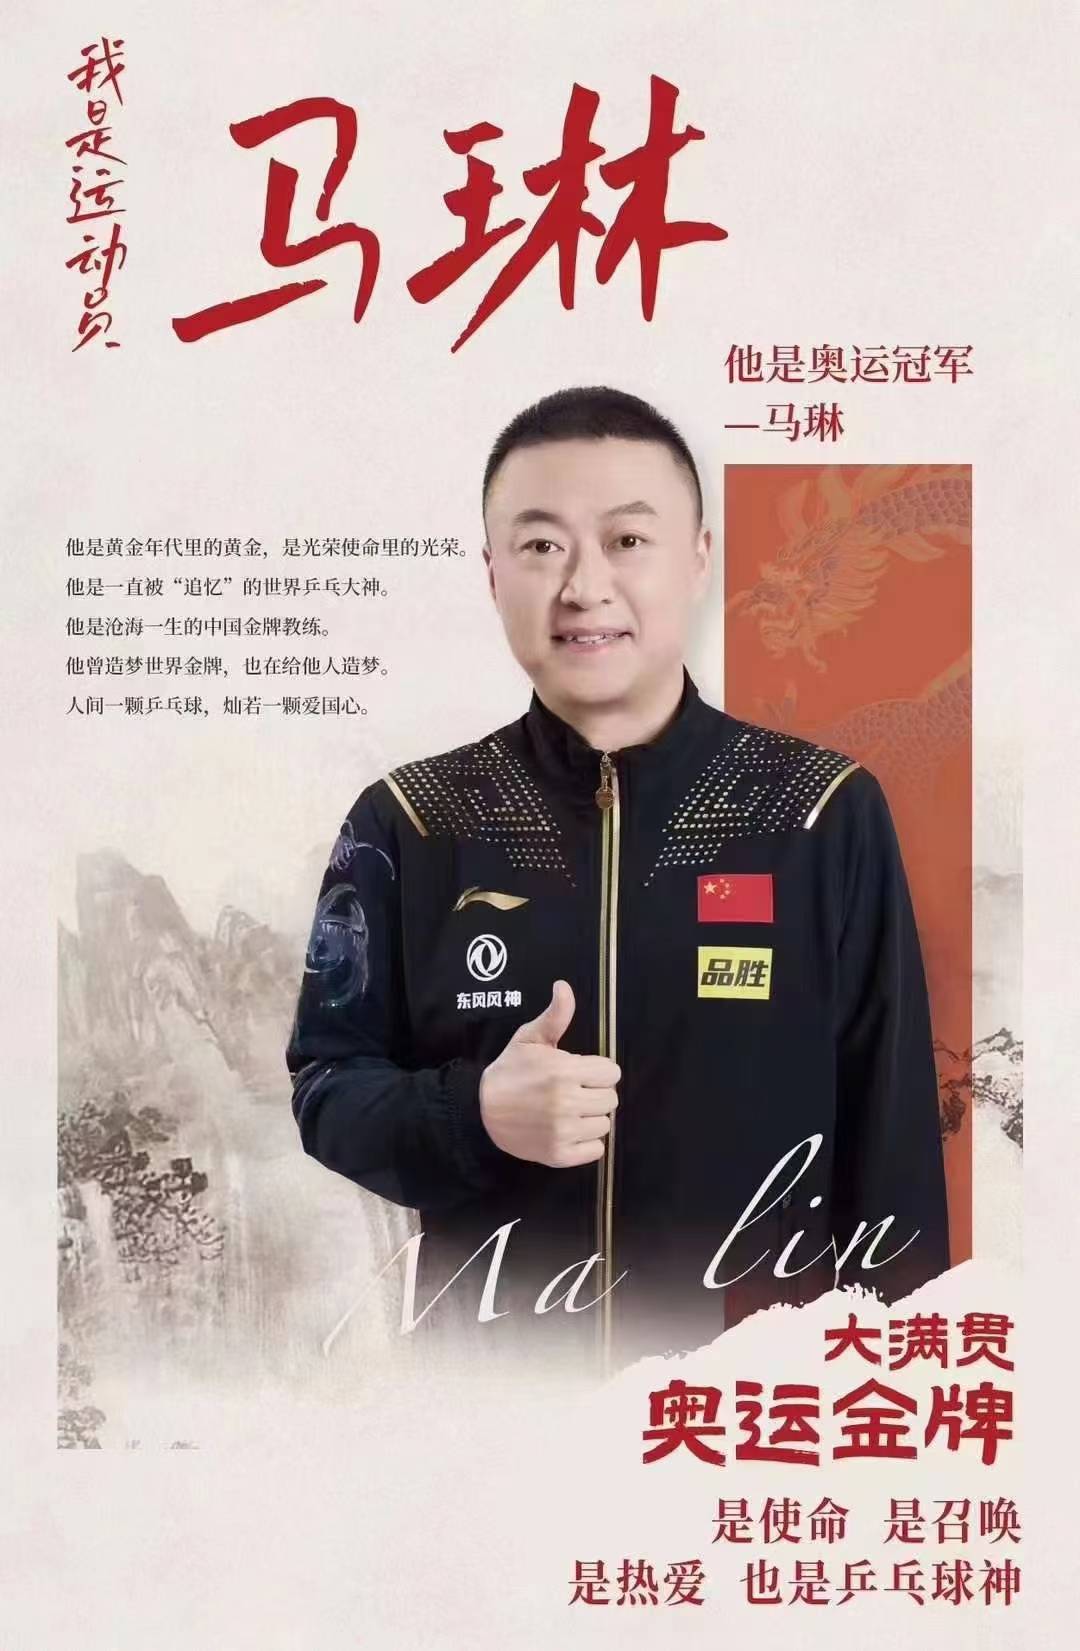 中共党员,现任中国国家乒乓球队女队主教练